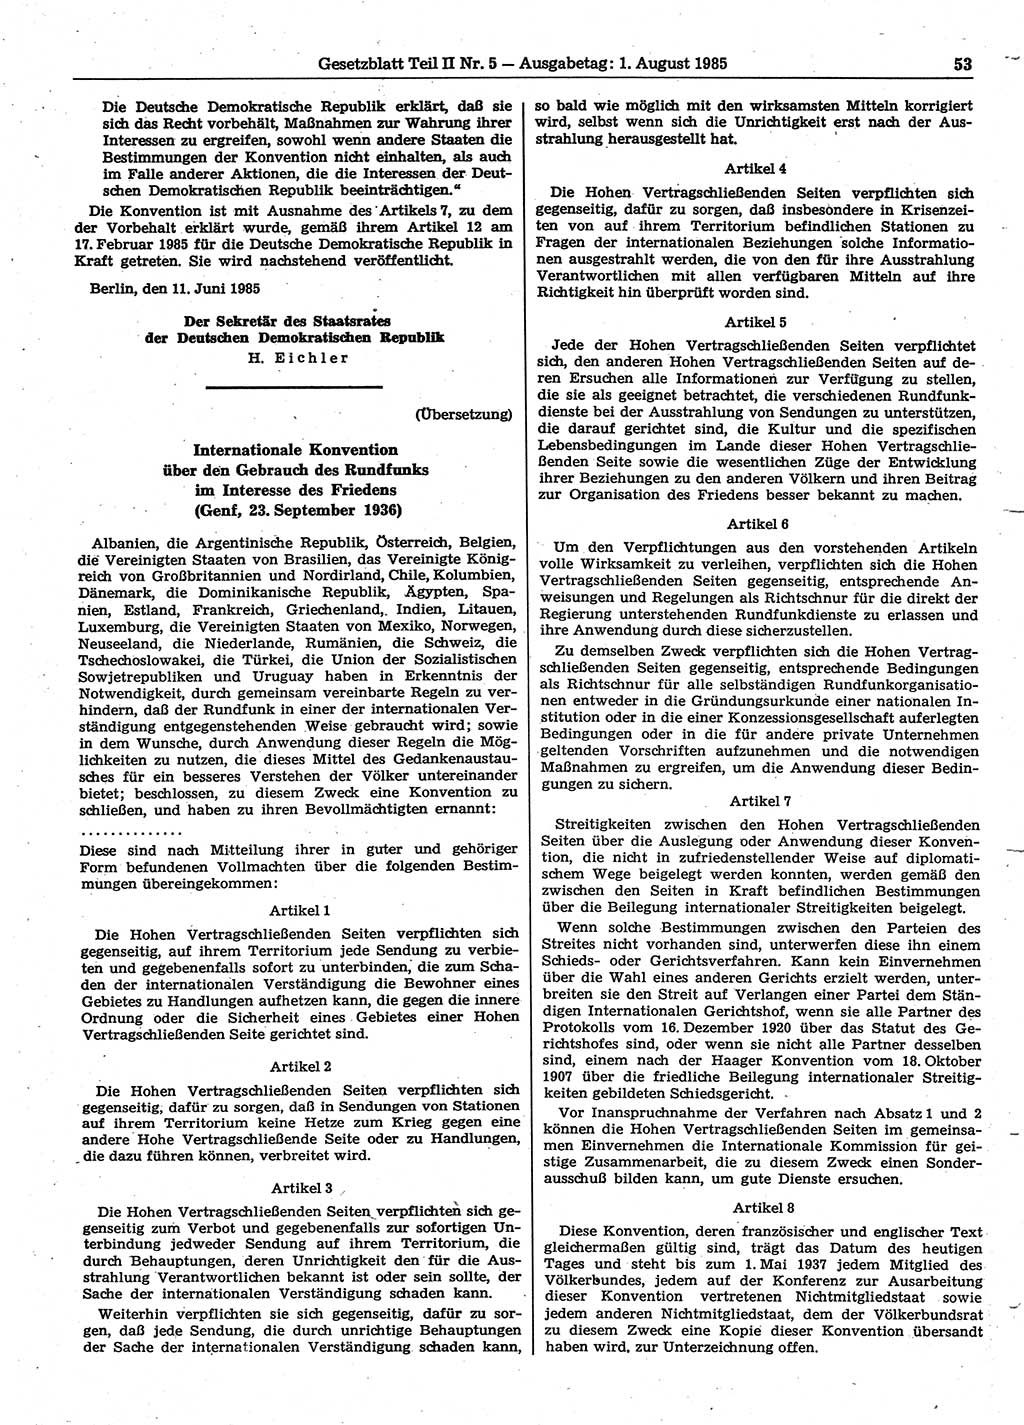 Gesetzblatt (GBl.) der Deutschen Demokratischen Republik (DDR) Teil ⅠⅠ 1985, Seite 53 (GBl. DDR ⅠⅠ 1985, S. 53)